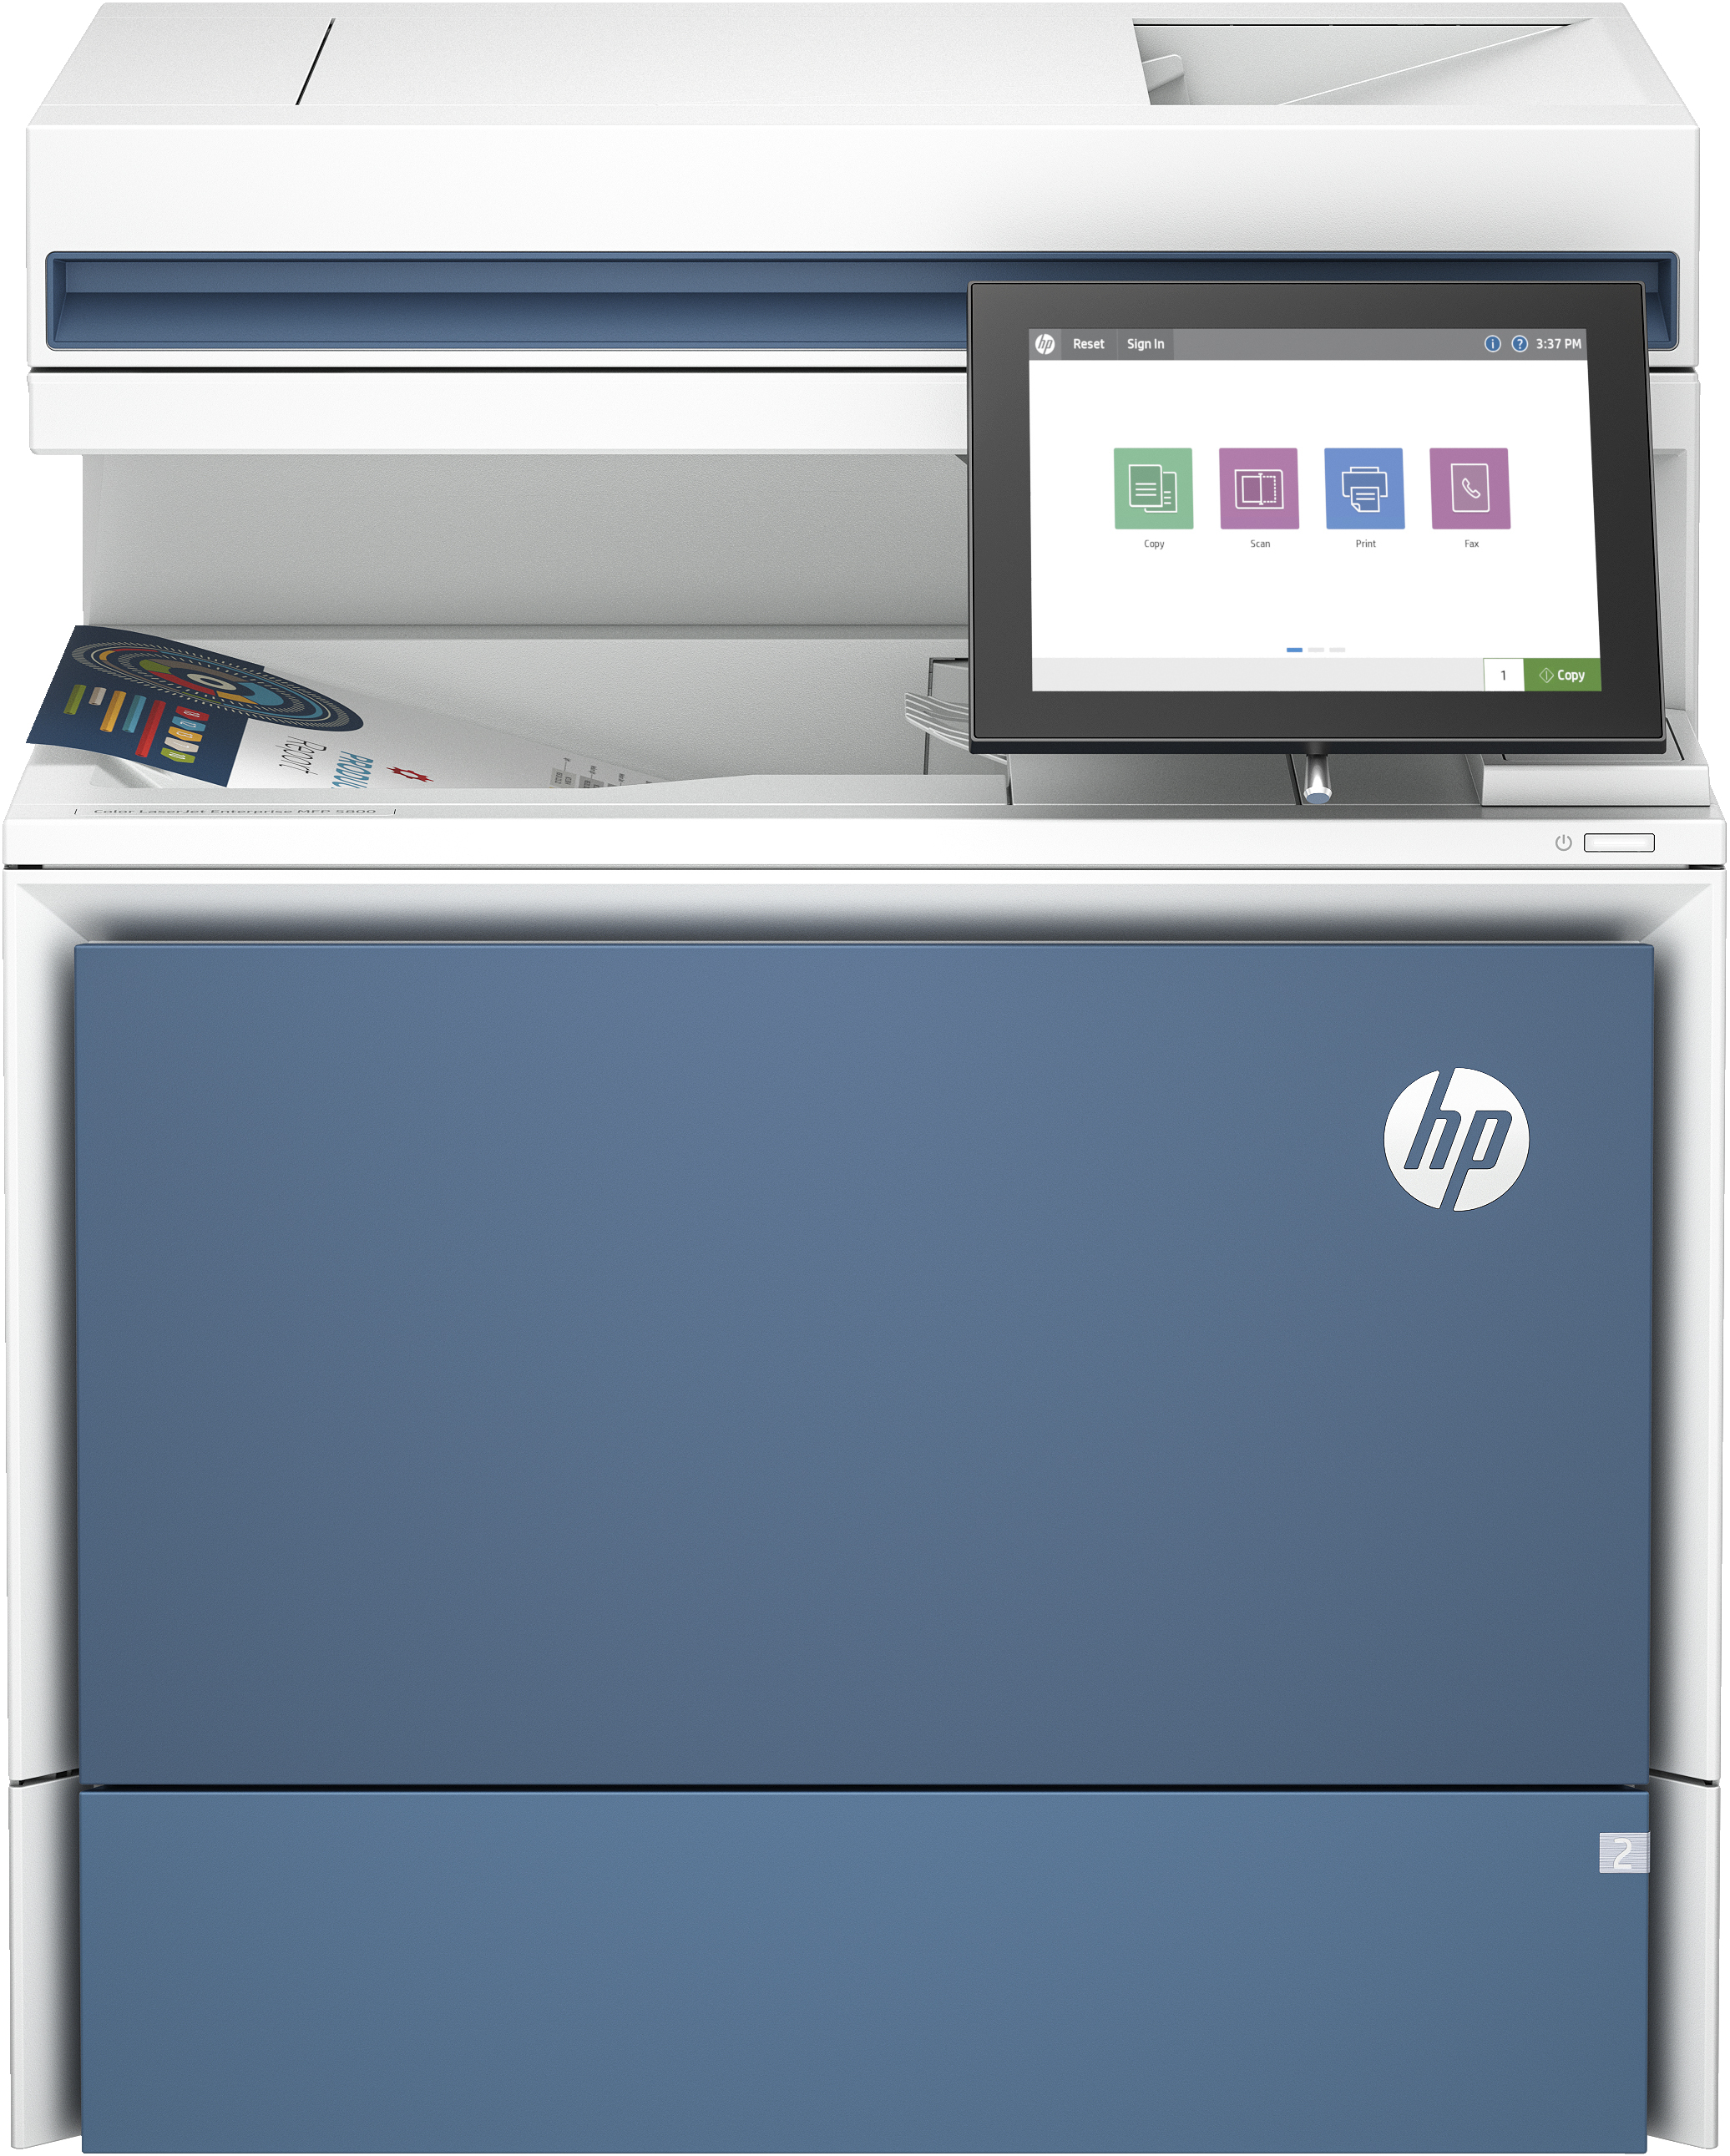 Image of HP LaserJet Stampante multifunzione Color Enterprise 5800dn, Colore, Stampante per Stampa, copia, scansione, fax (opzionale), Alimentatore automatico di documenti; vassoi ad alta capacità opzionali; touchscreen; cartuccia TerraJet